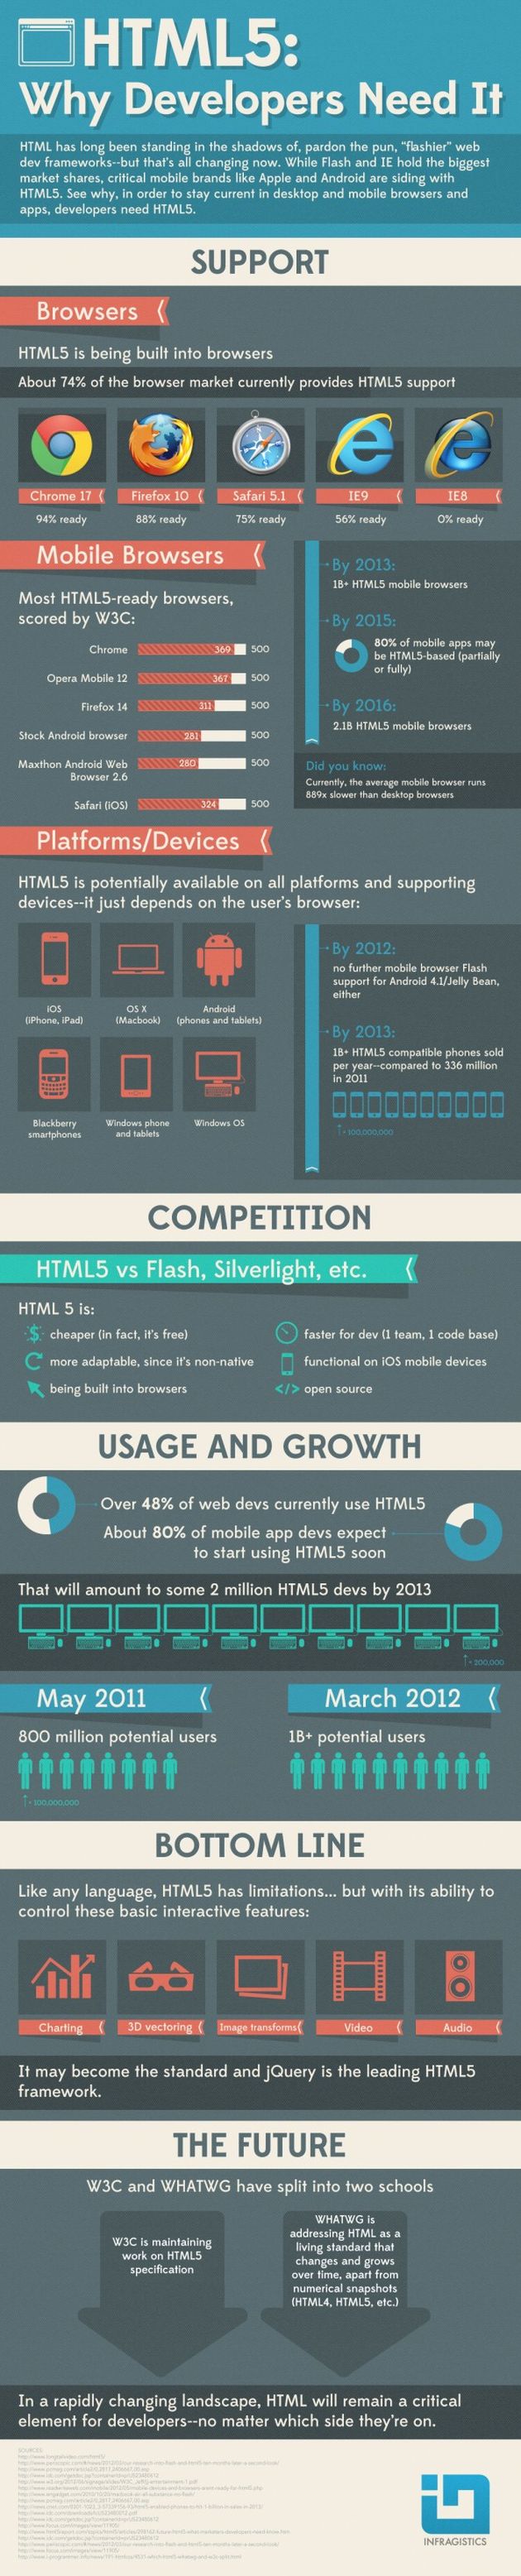 Por qué los desarrolladores necesitan de HTML5 (infografía)